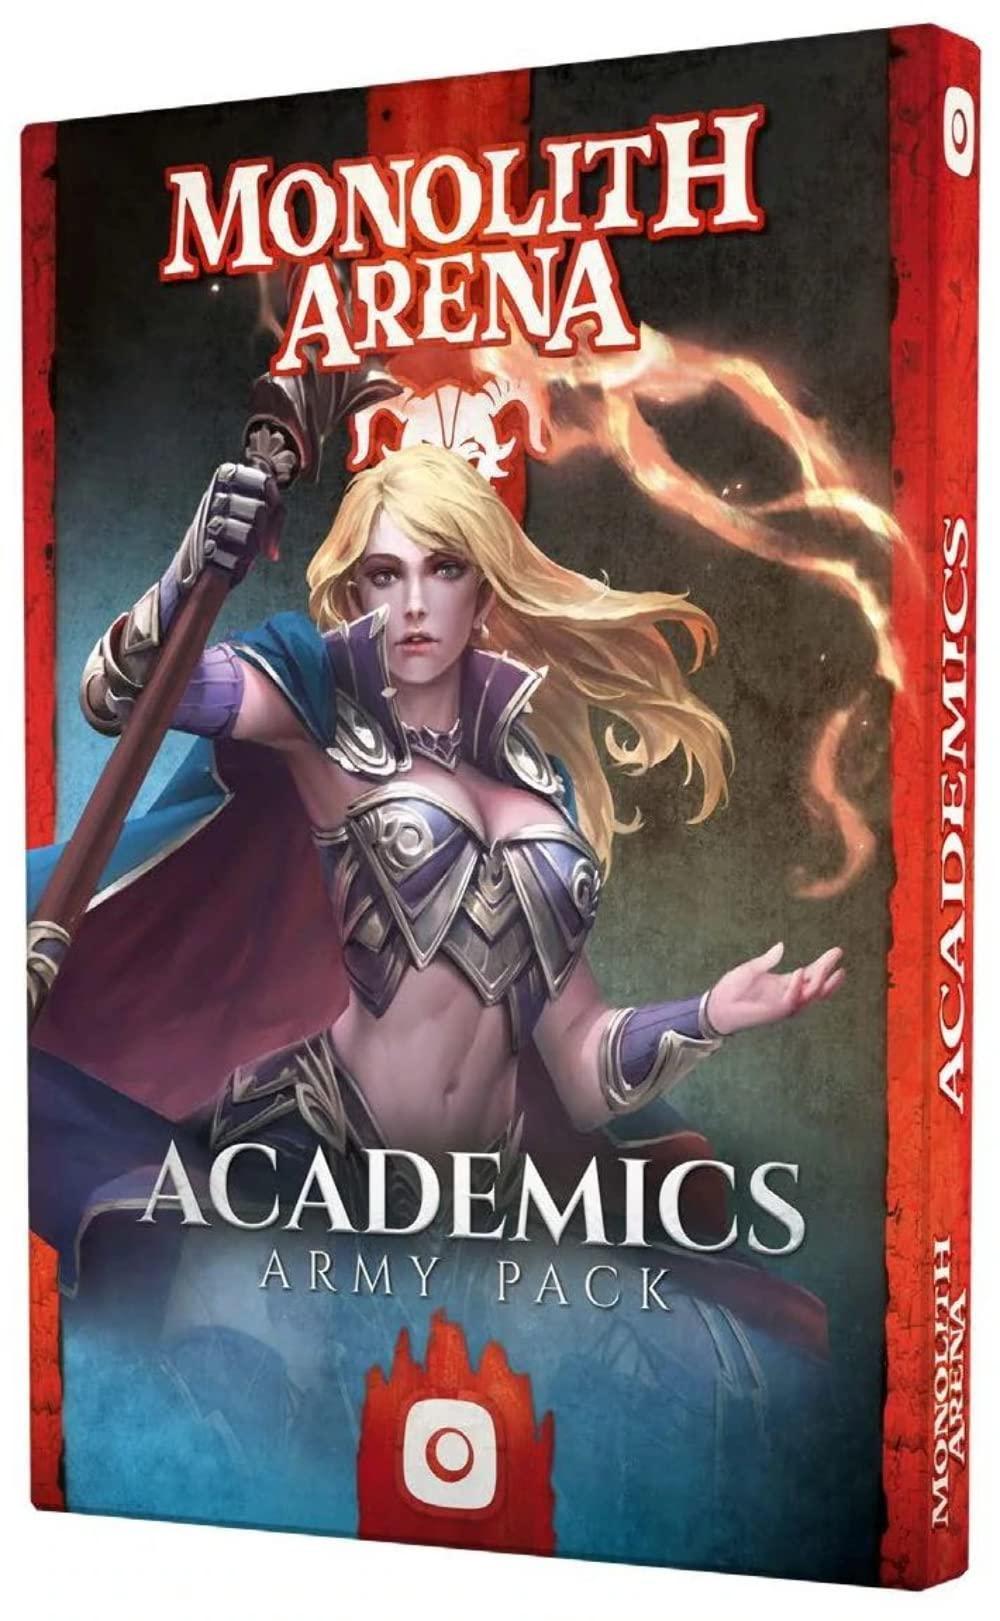 Monolith Arena - Academics